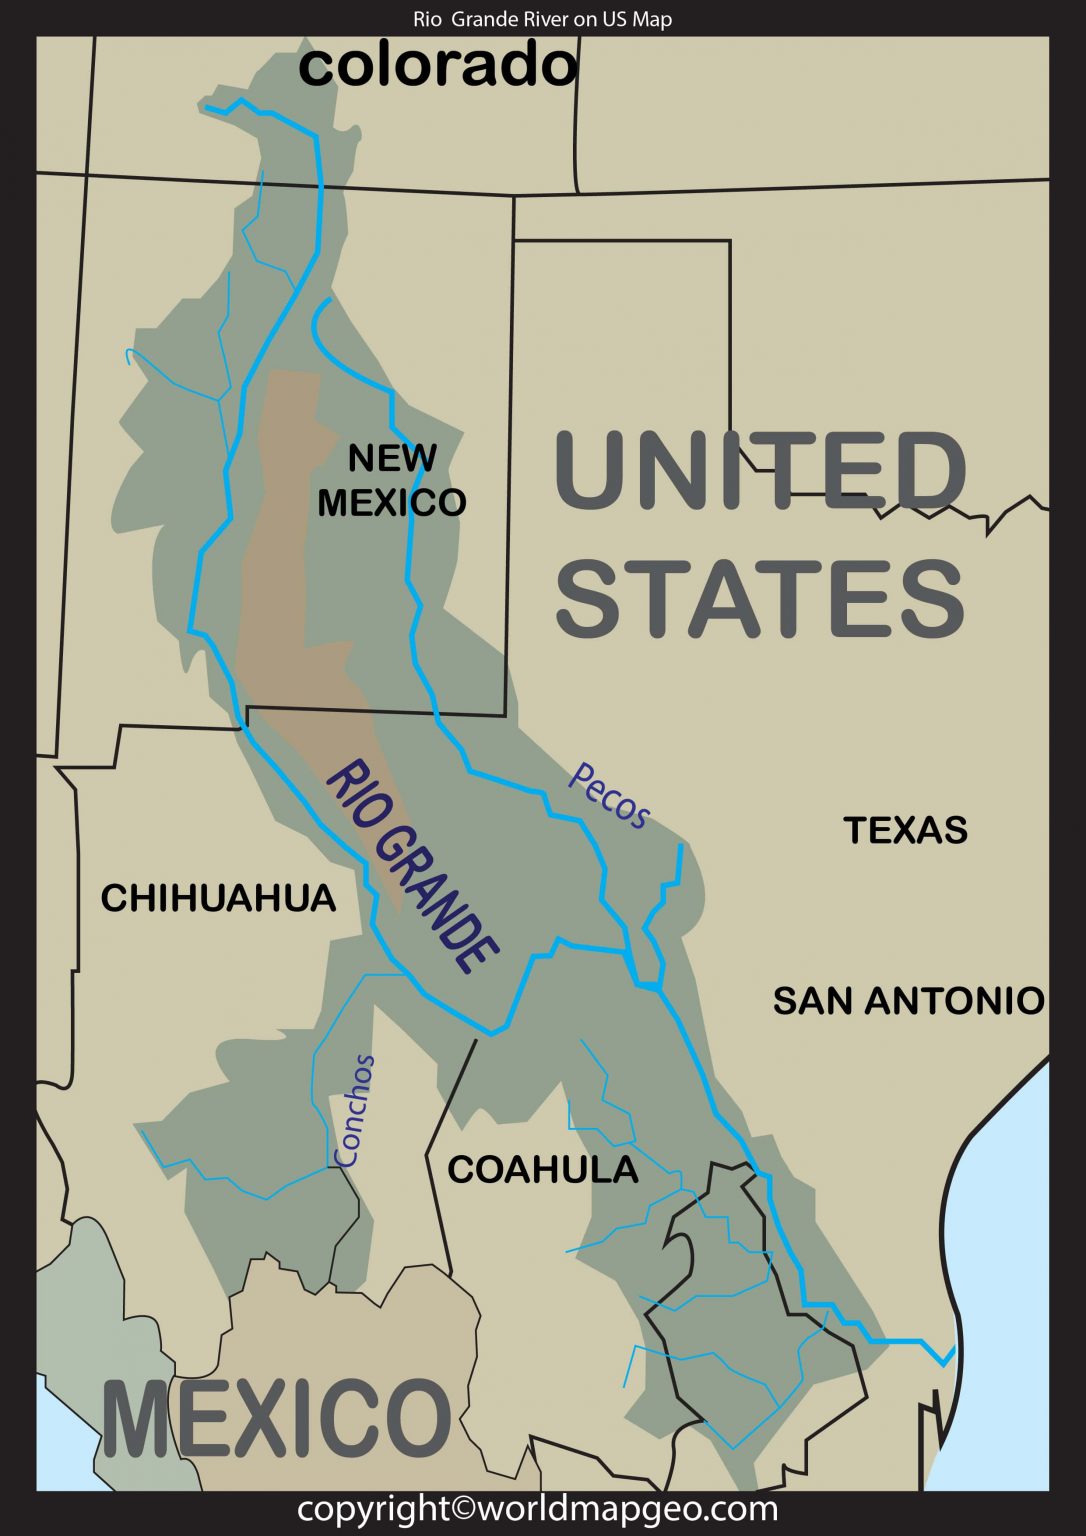 Rio Grande River On US Map 1086x1536 